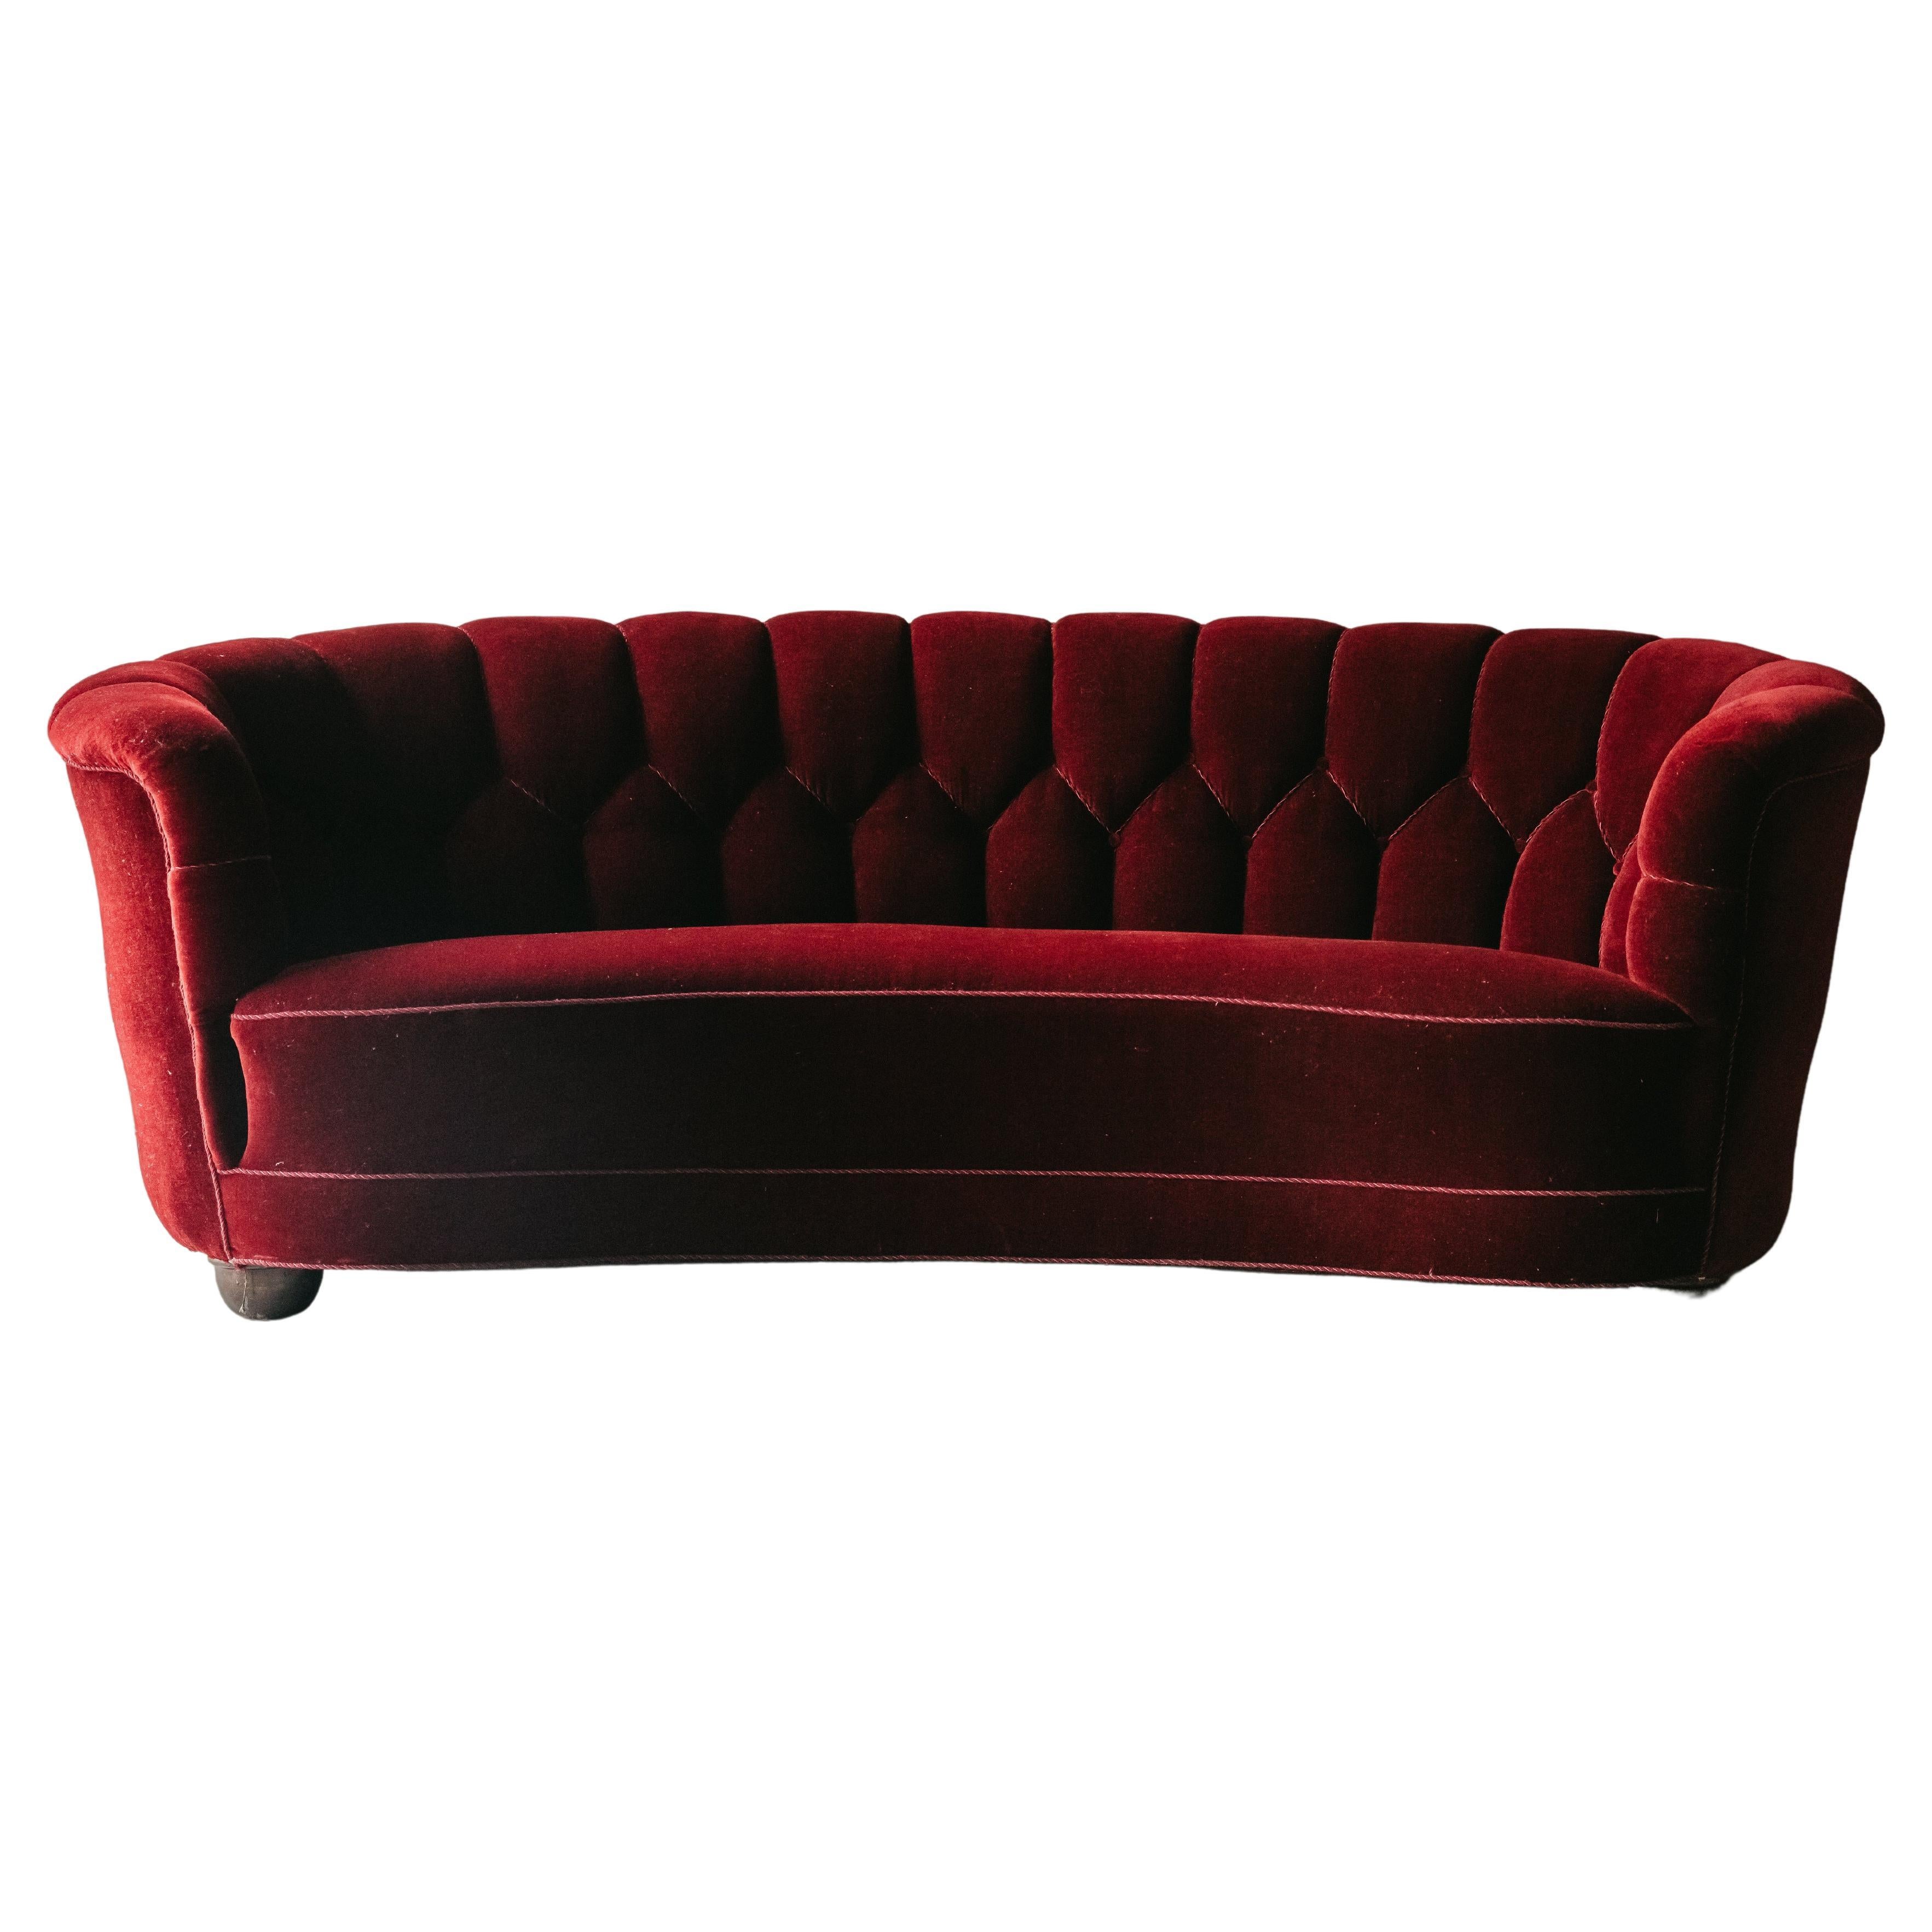 Vintage Red Velvet Sofa From Denmark